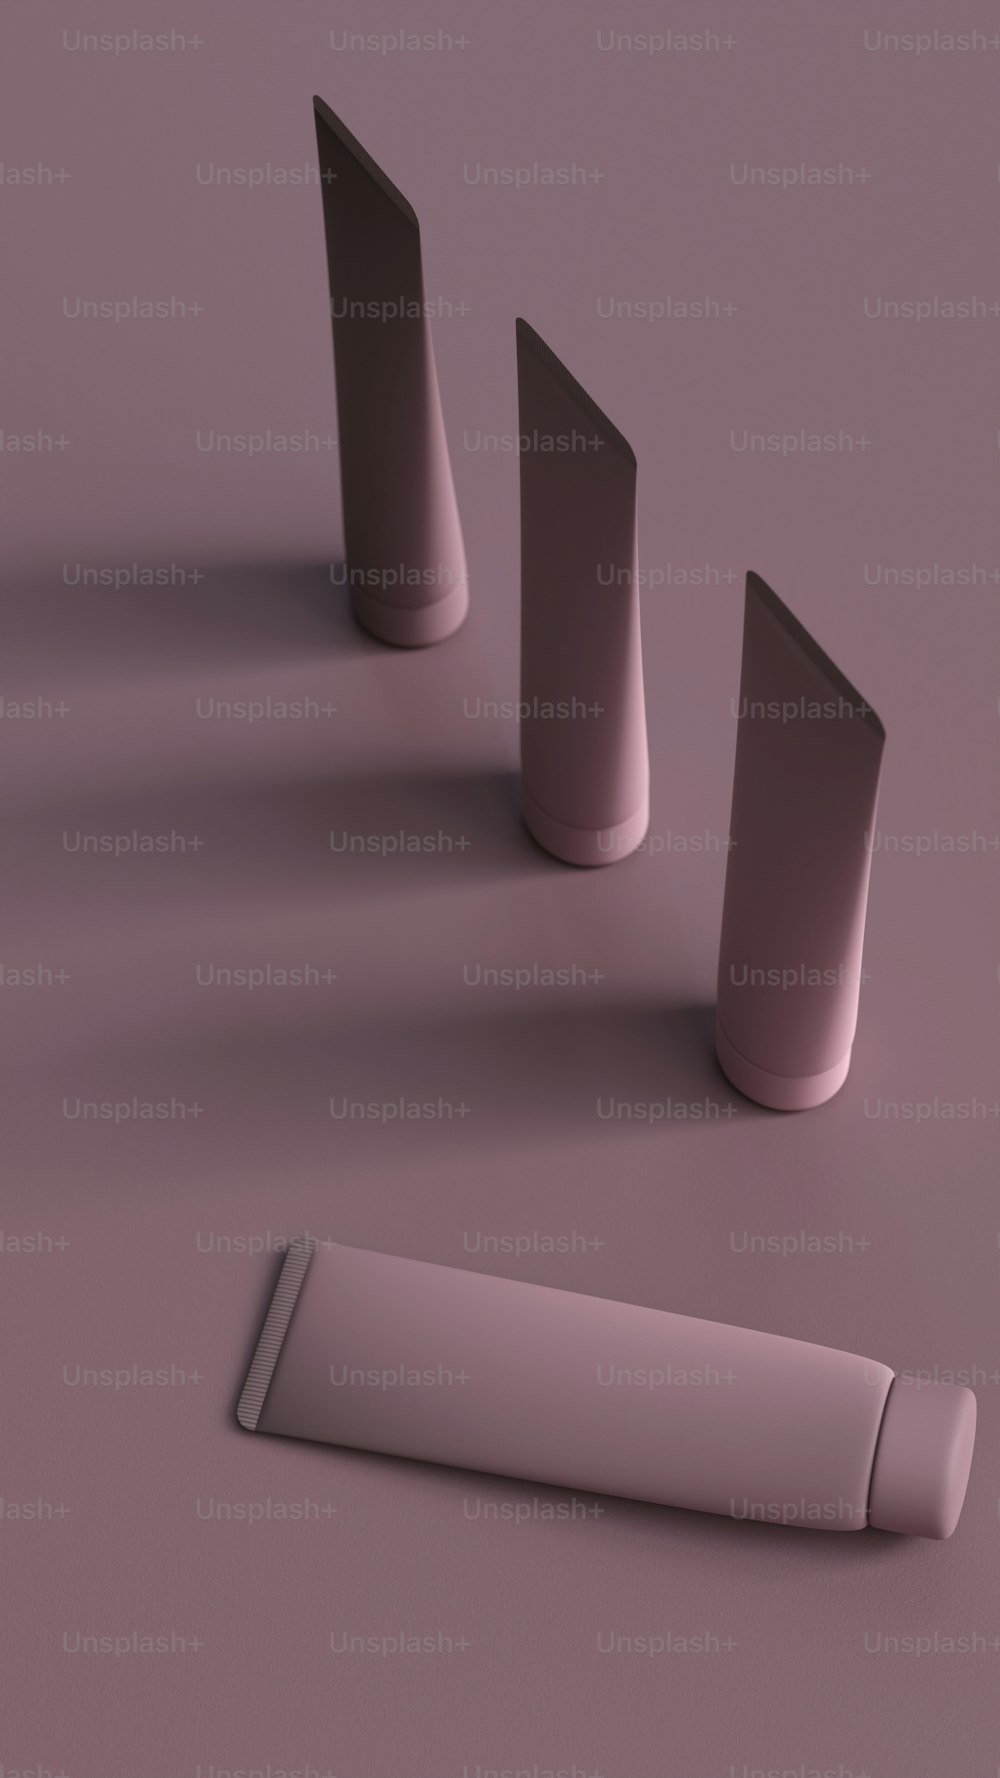 Eine Gruppe von drei zylindrischen Objekten auf einer violetten Oberfläche